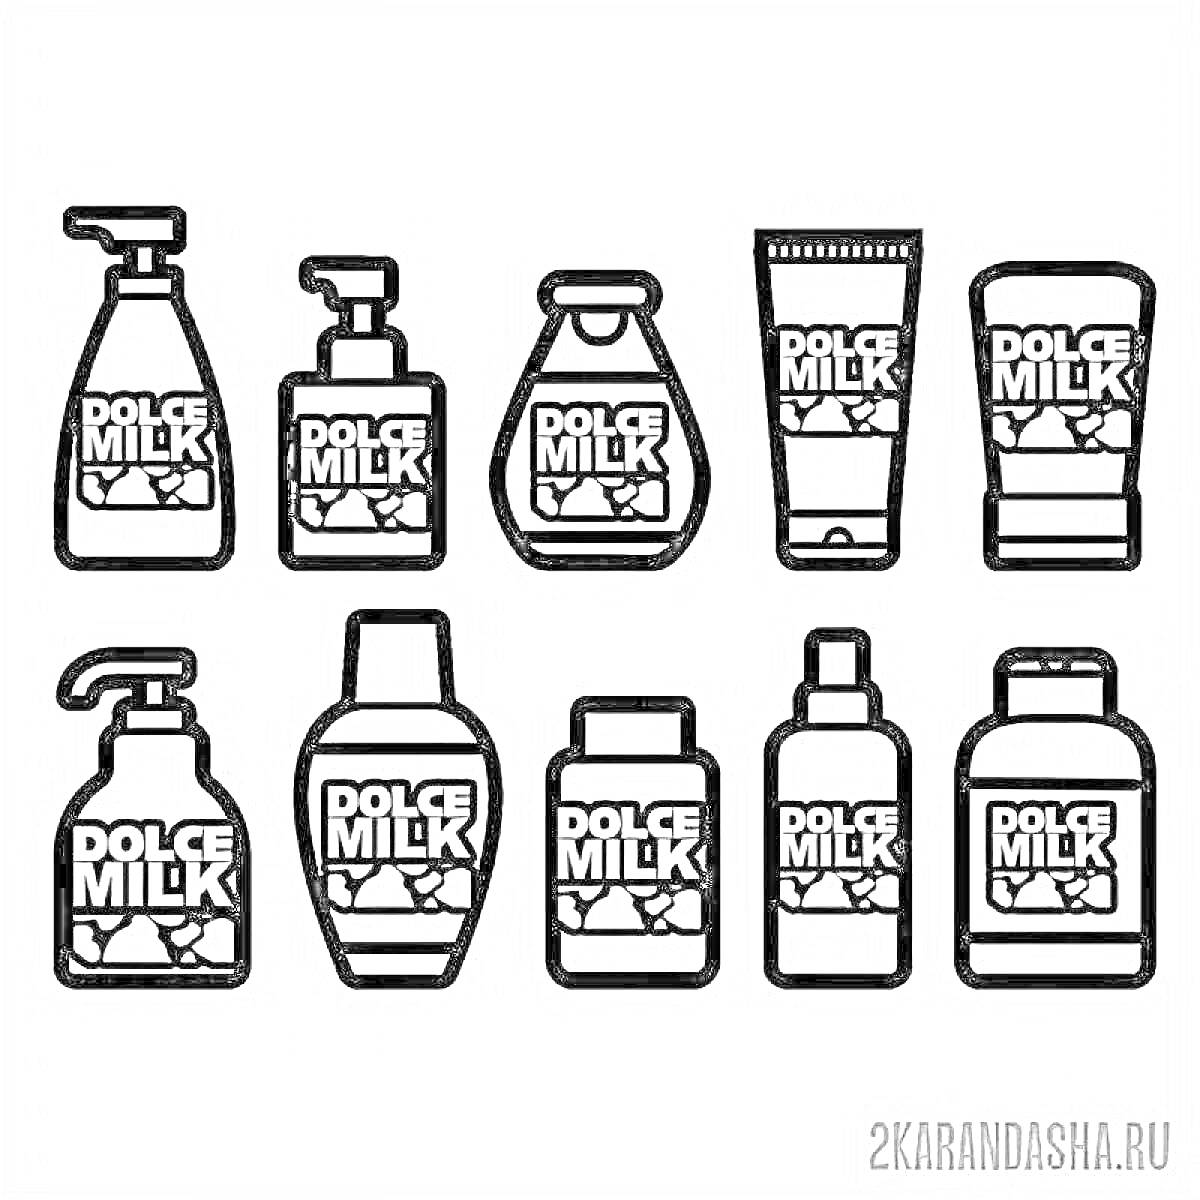 бутылочки и тюбики с различными формами логотипа Dolce Milk